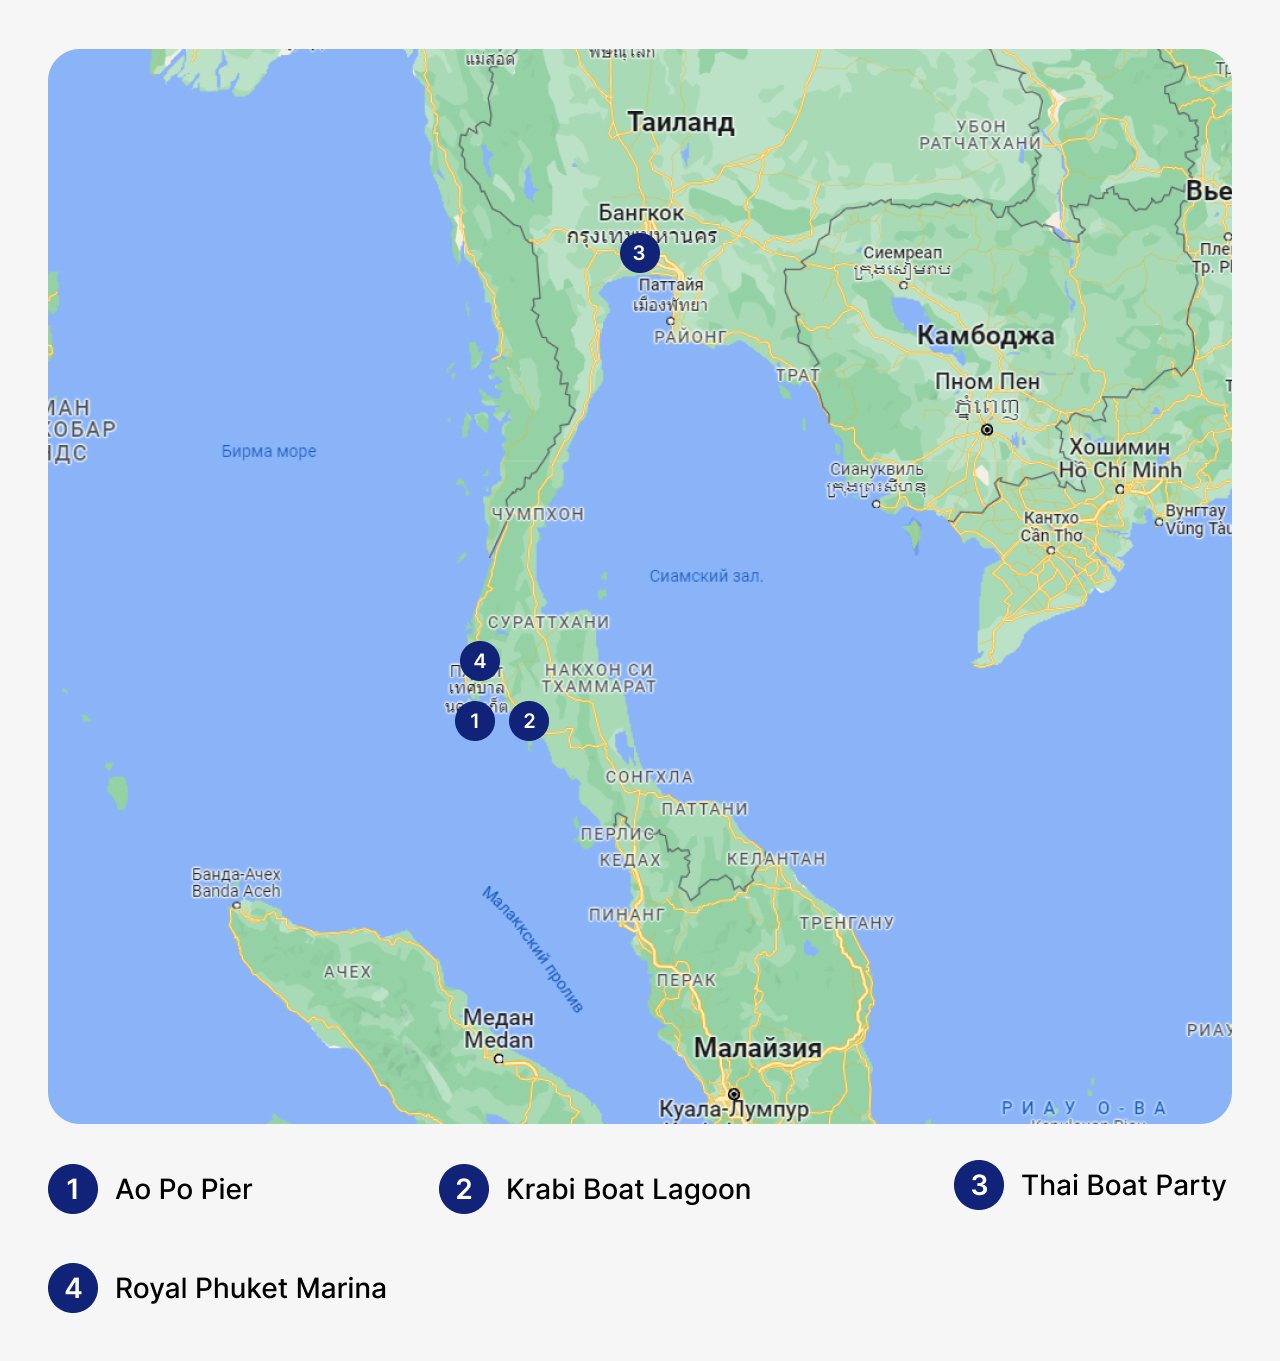 Лучшие марины в Таиланде, карта Таиланда с маринами, стоянка для яхт в Таиланде, где хранить яхты в Таиланде